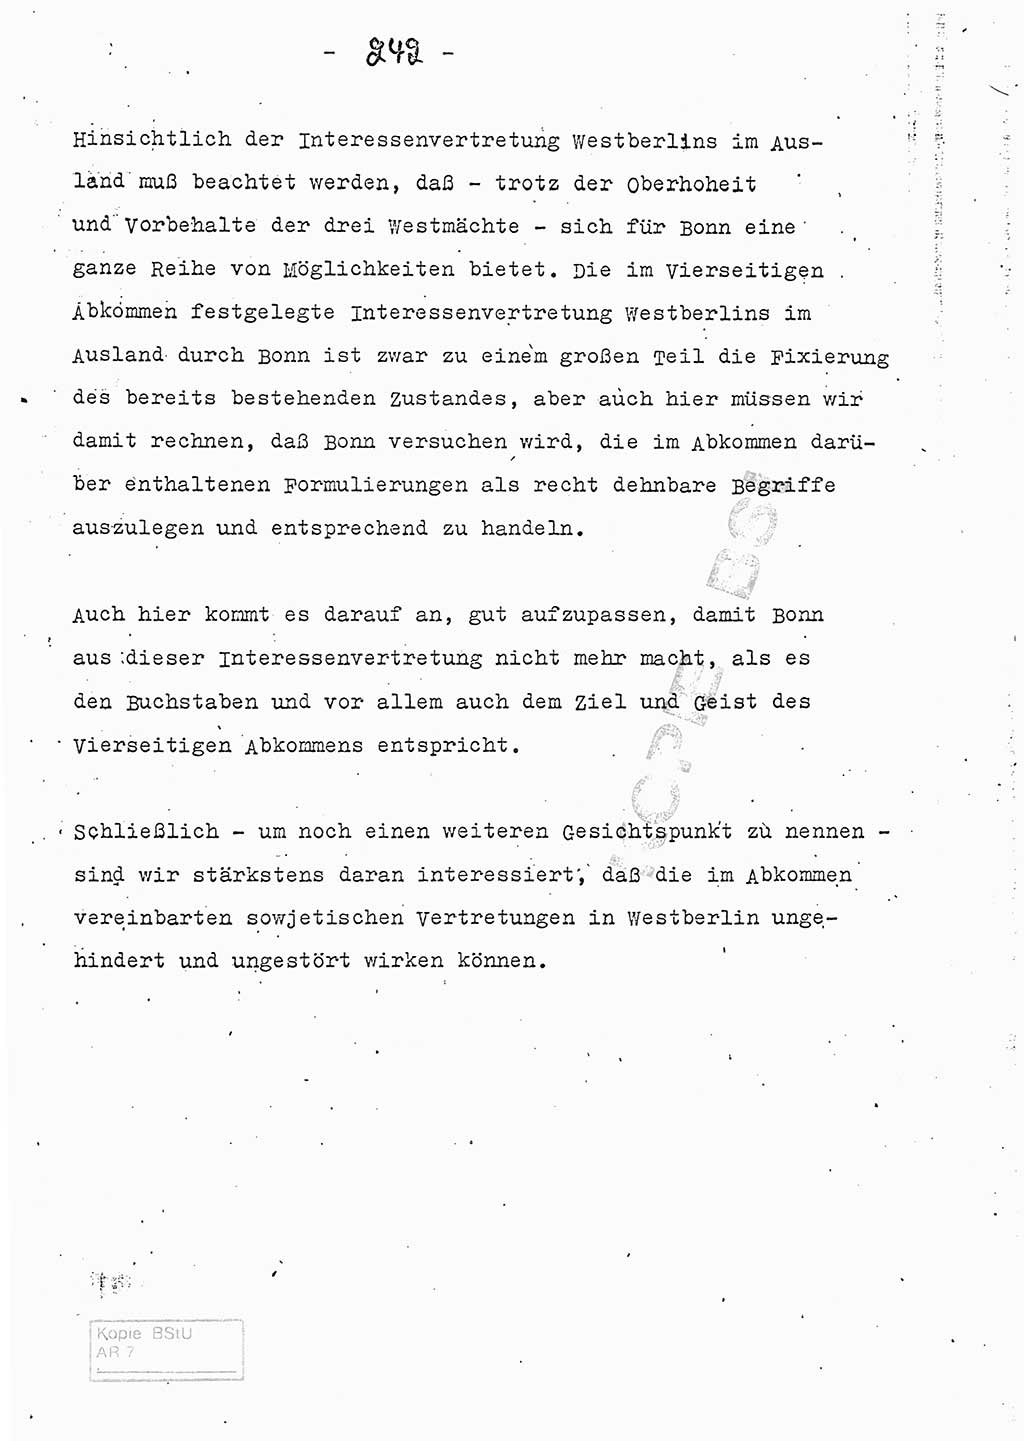 Referat (Entwurf) des Genossen Minister (Generaloberst Erich Mielke) auf der Dienstkonferenz 1972, Ministerium für Staatssicherheit (MfS) [Deutsche Demokratische Republik (DDR)], Der Minister, Geheime Verschlußsache (GVS) 008-150/72, Berlin 25.2.1972, Seite 242 (Ref. Entw. DK MfS DDR Min. GVS 008-150/72 1972, S. 242)